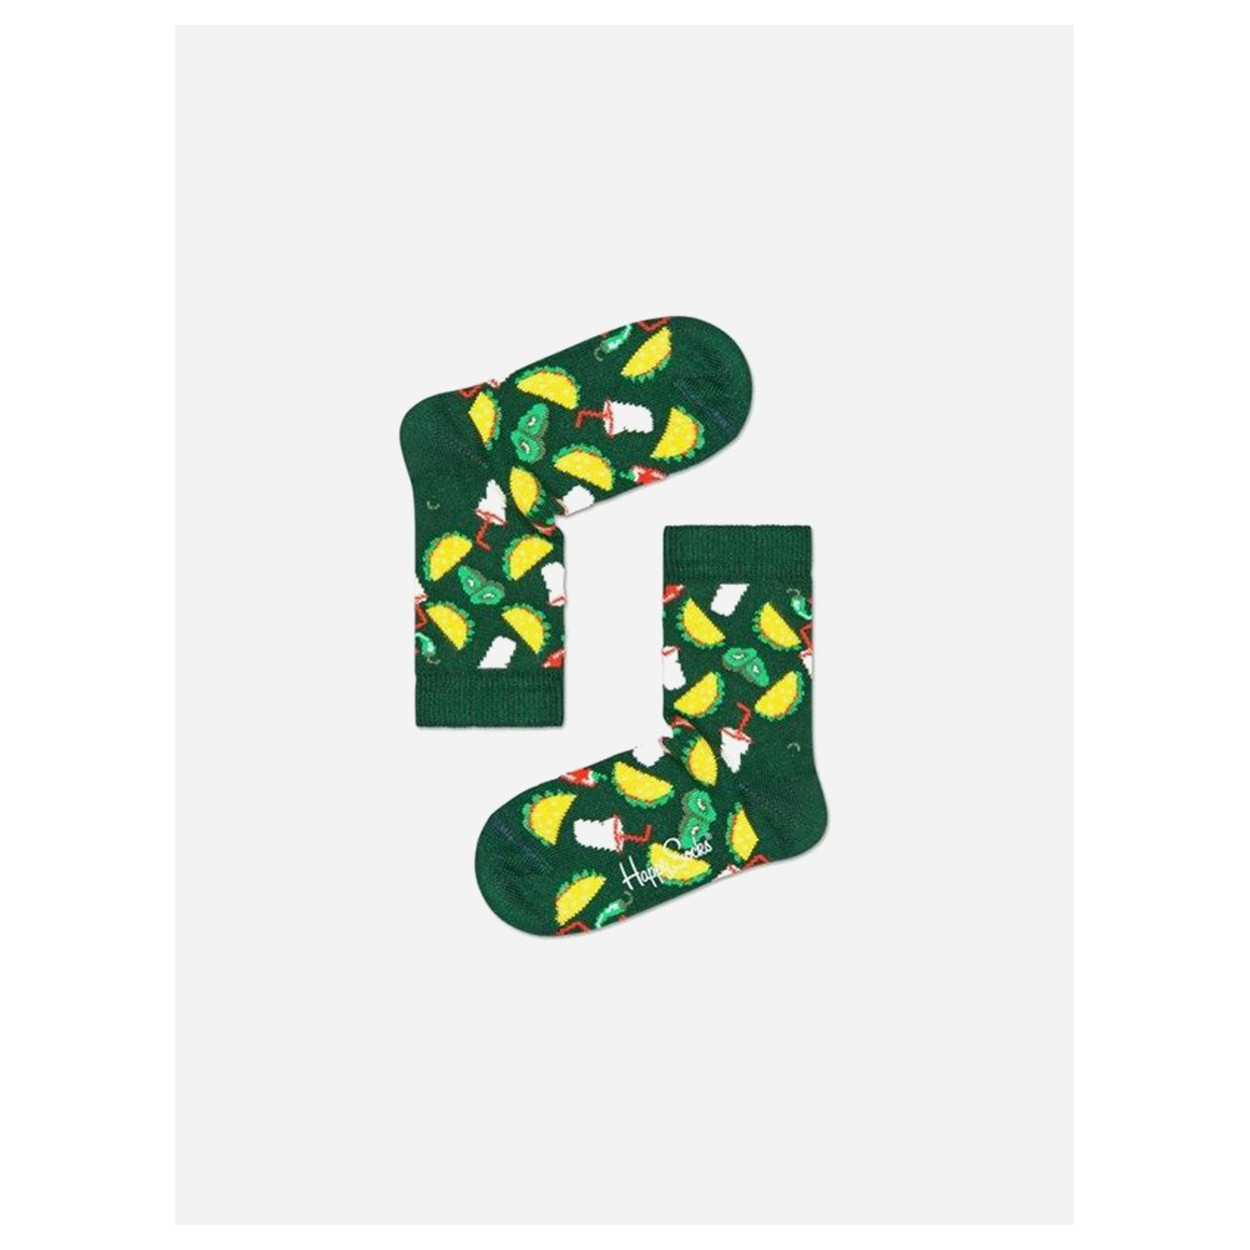 Skarpetki dla dzieci - Taco / zielone